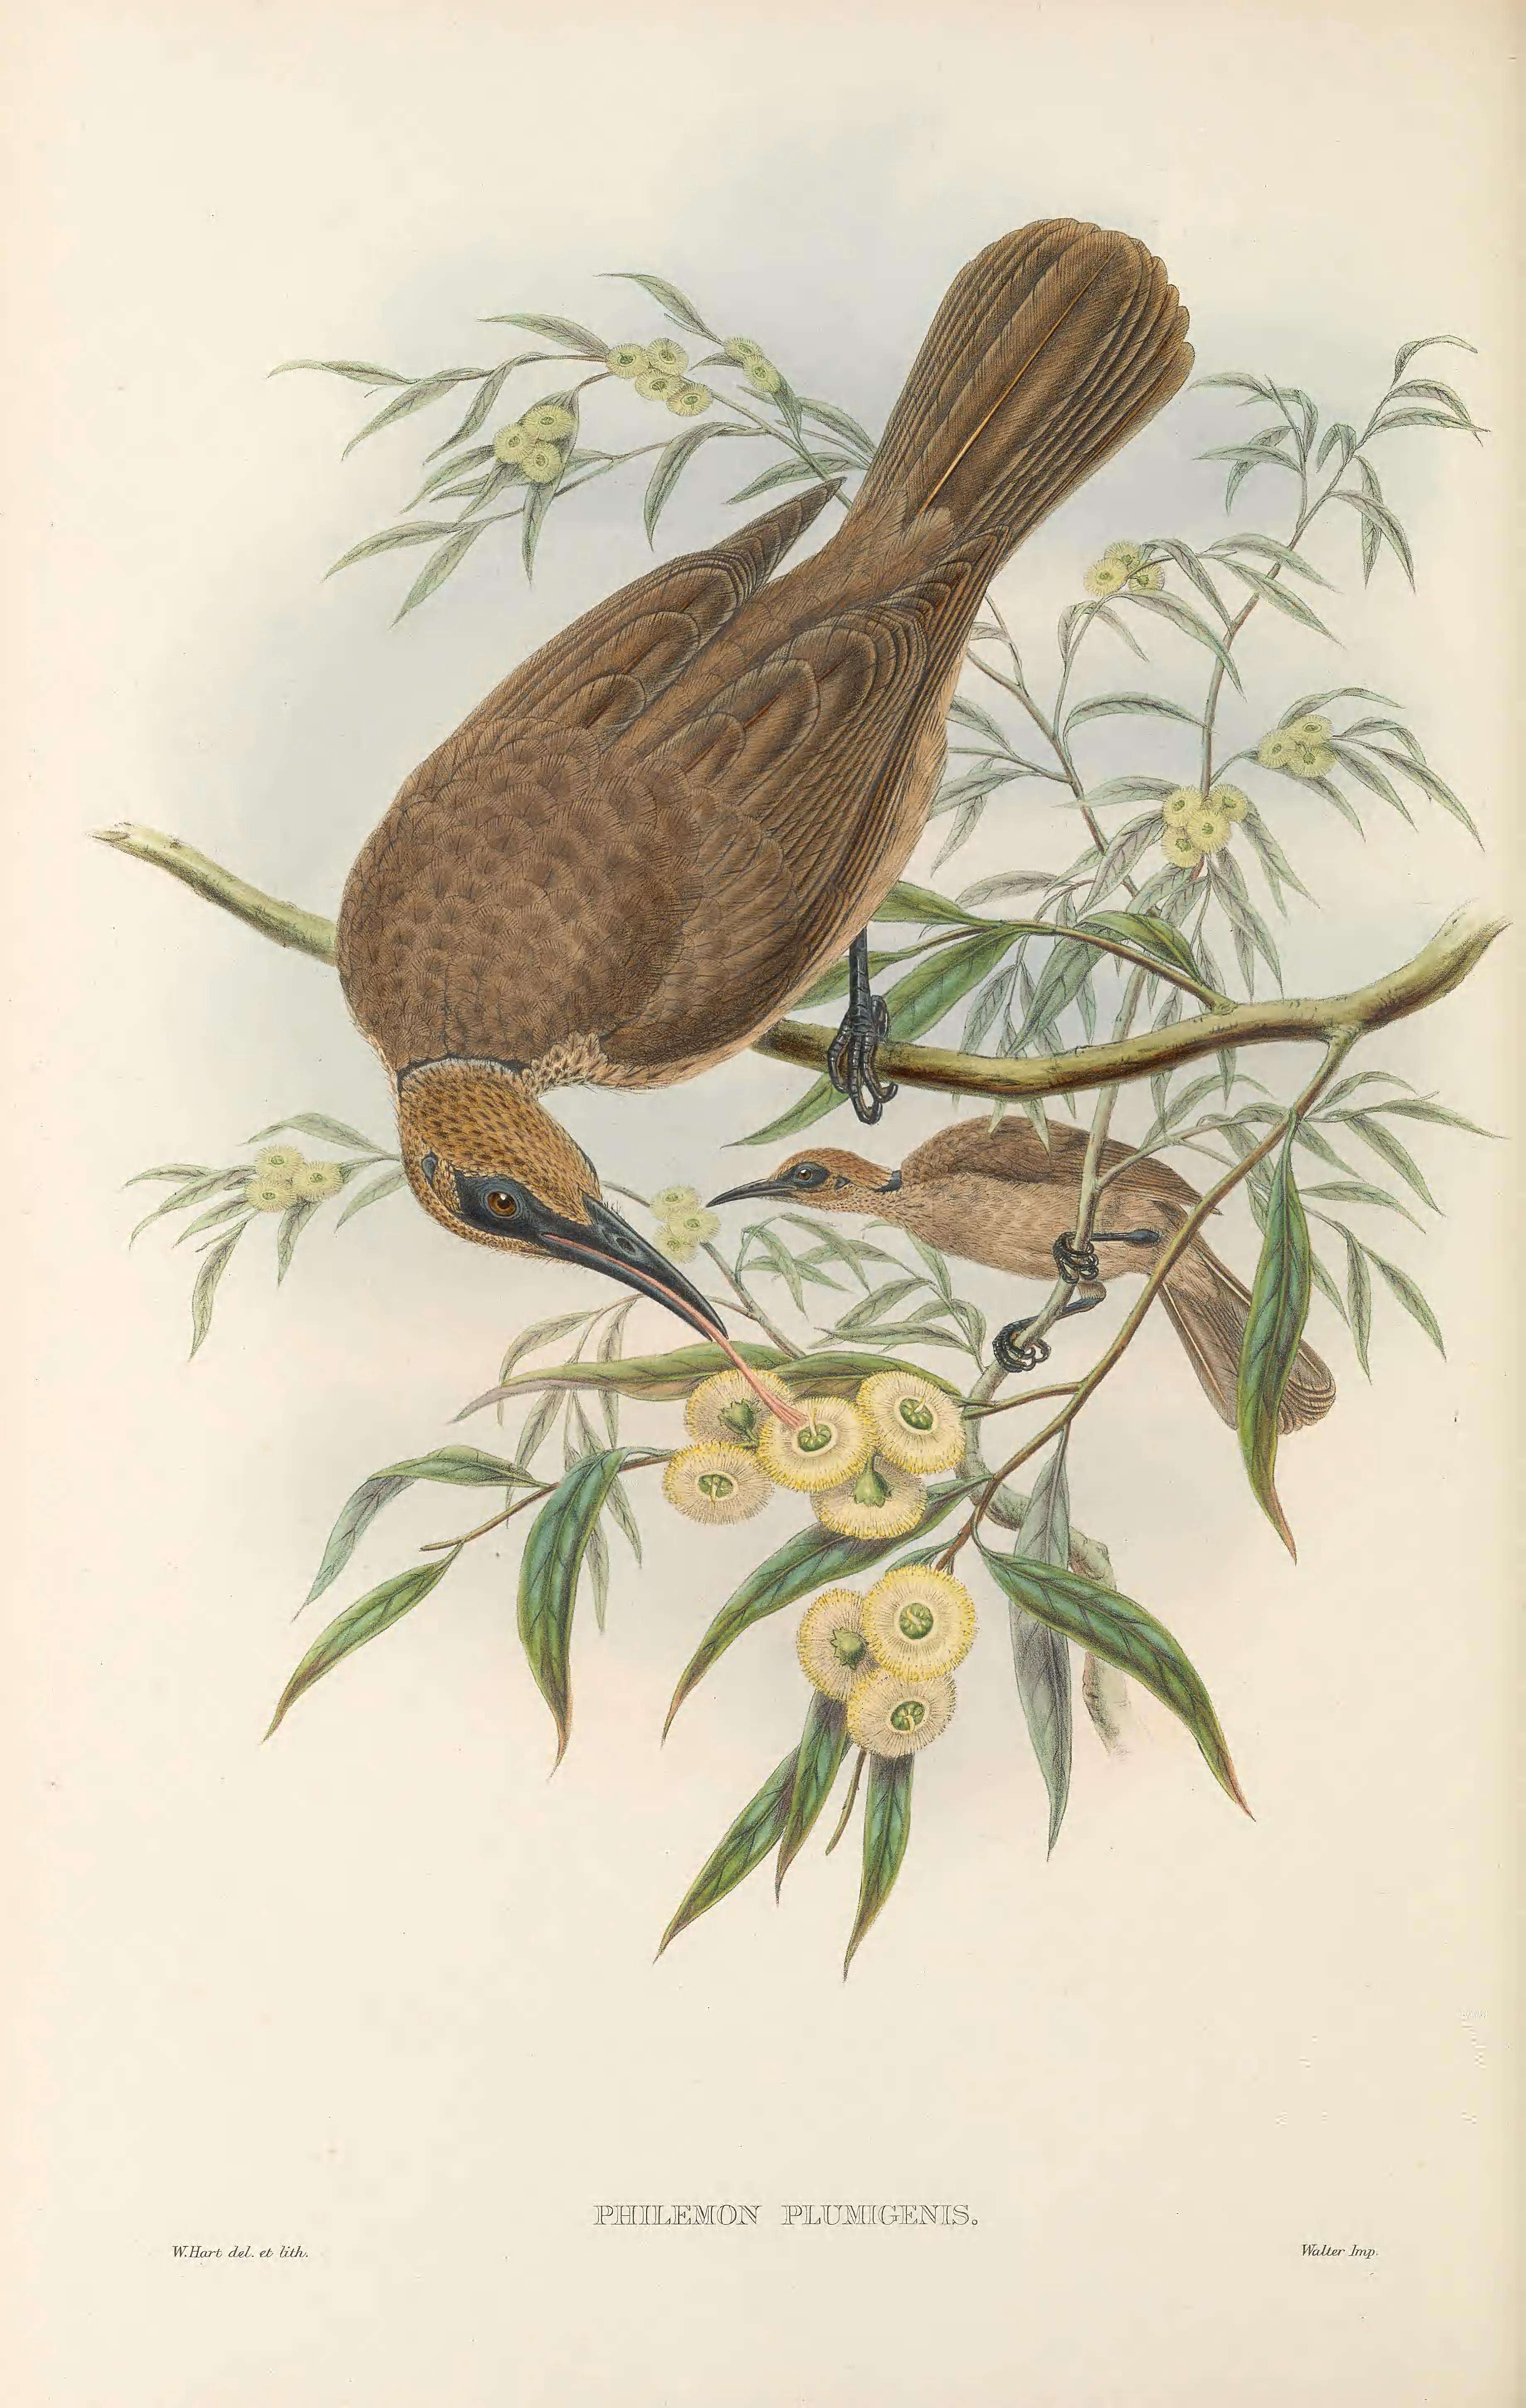 Image of Tanimbar Friarbird